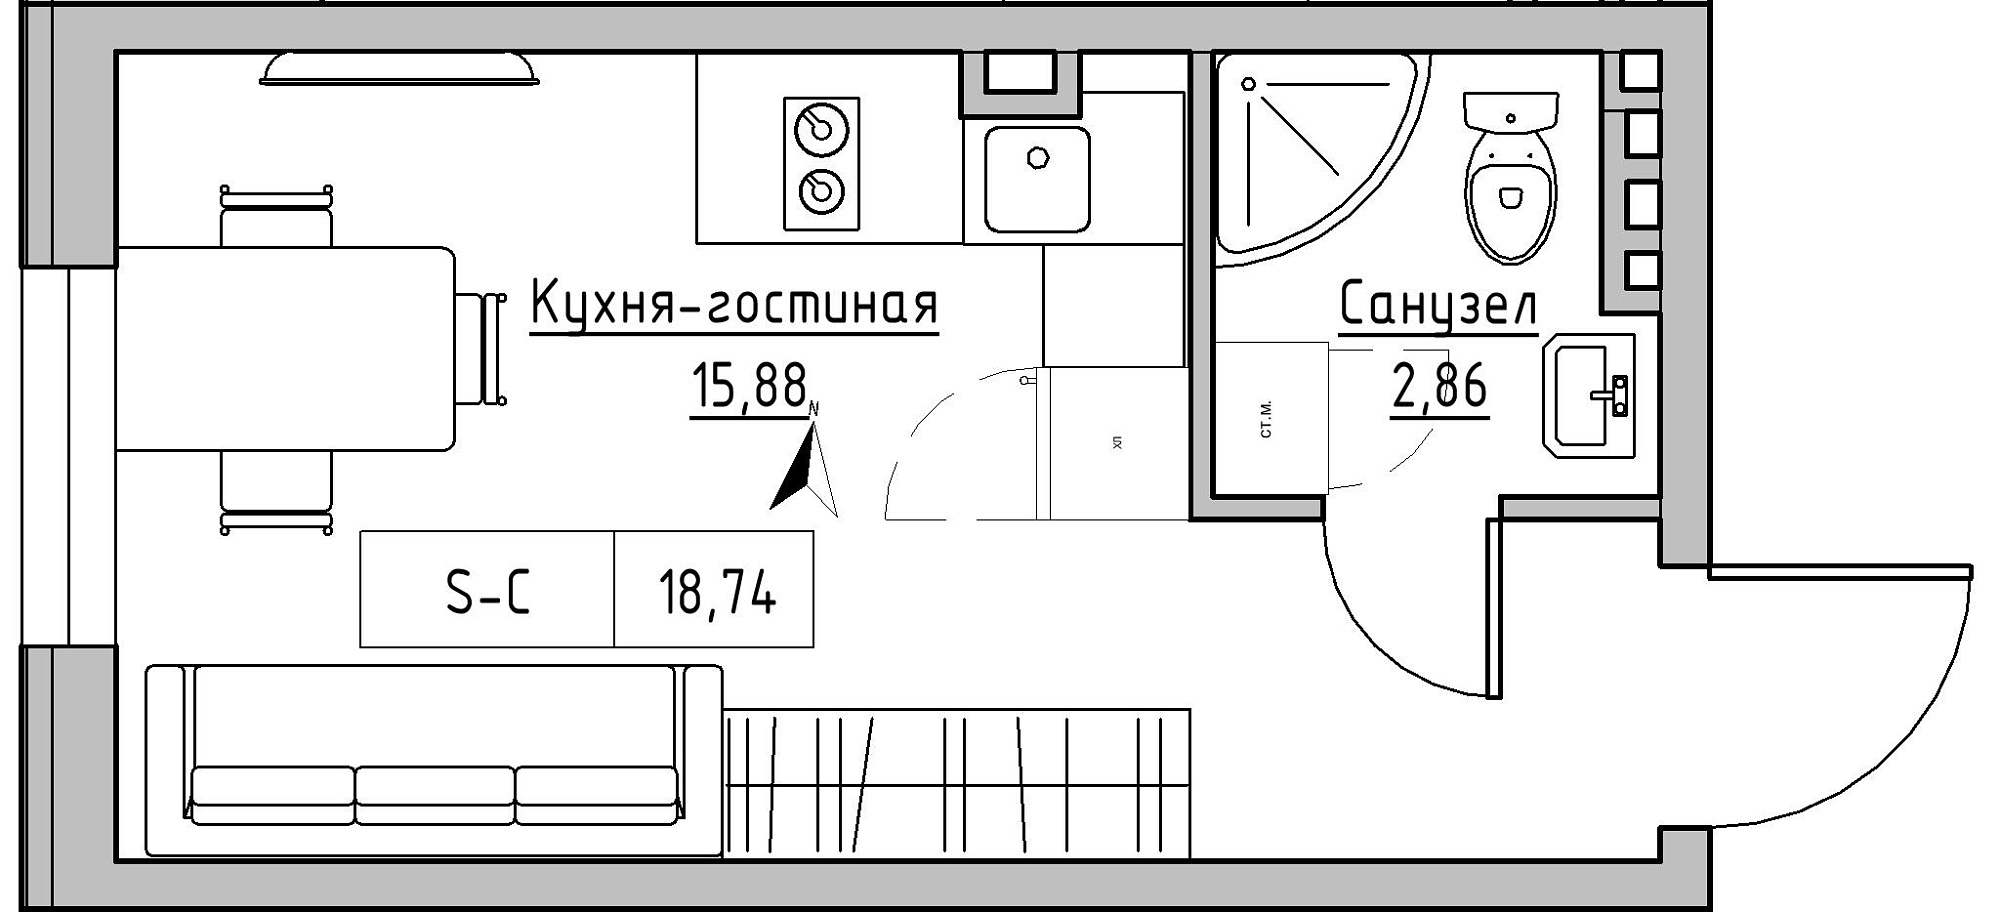 Планування Smart-квартира площею 18.74м2, KS-024-01/0011.